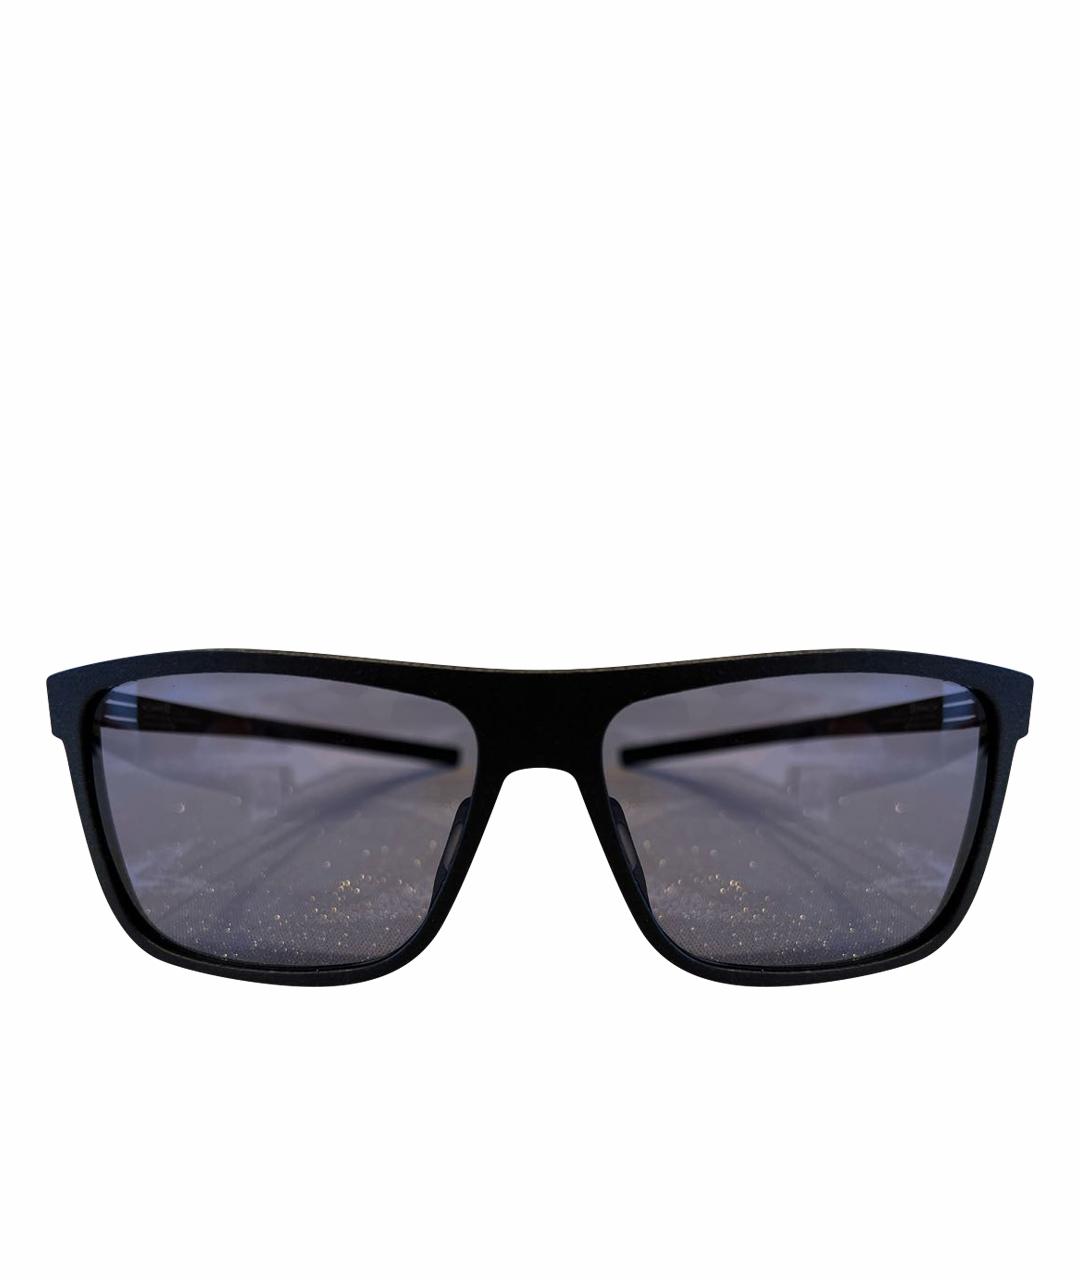 ICBERLIN Черные пластиковые солнцезащитные очки, фото 1